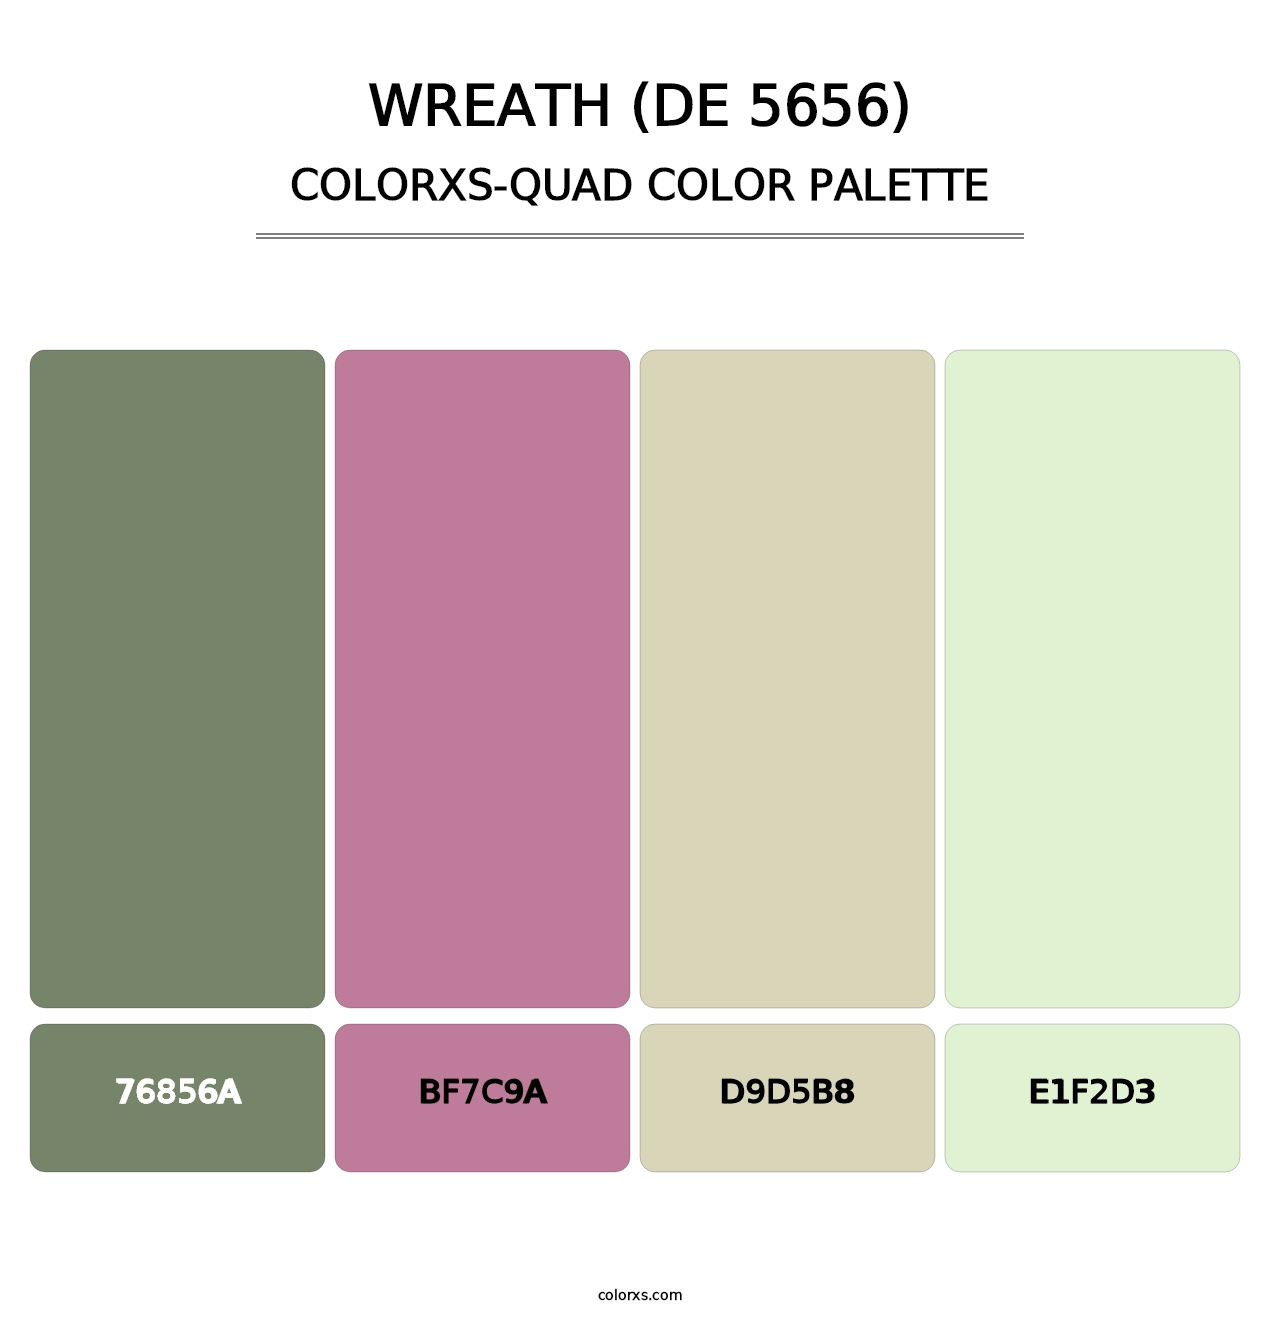 Wreath (DE 5656) - Colorxs Quad Palette